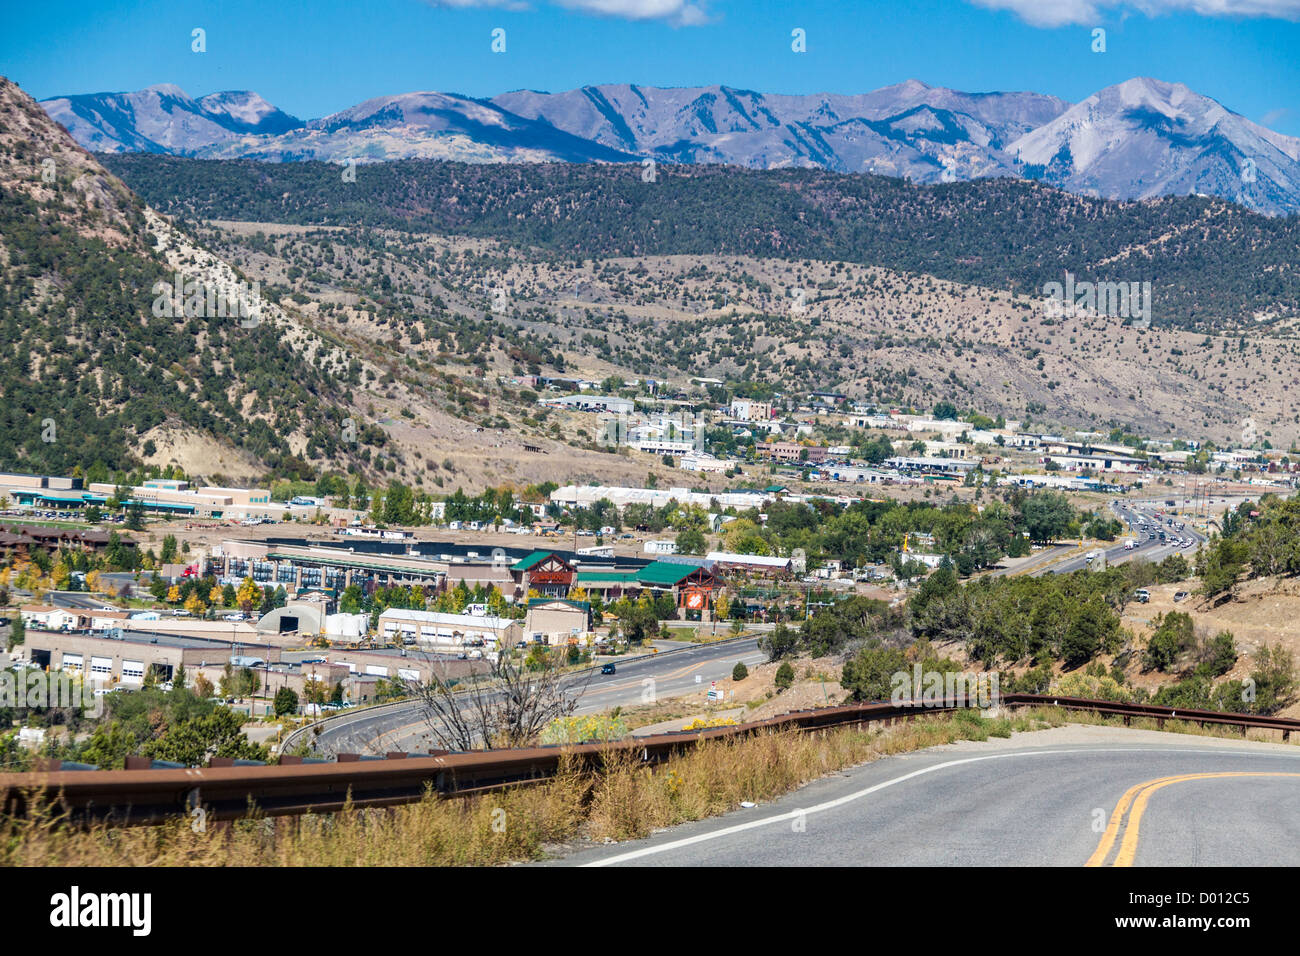 US 550 à Durango, Colorado, avec les montagnes de San Juan au loin. Banque D'Images